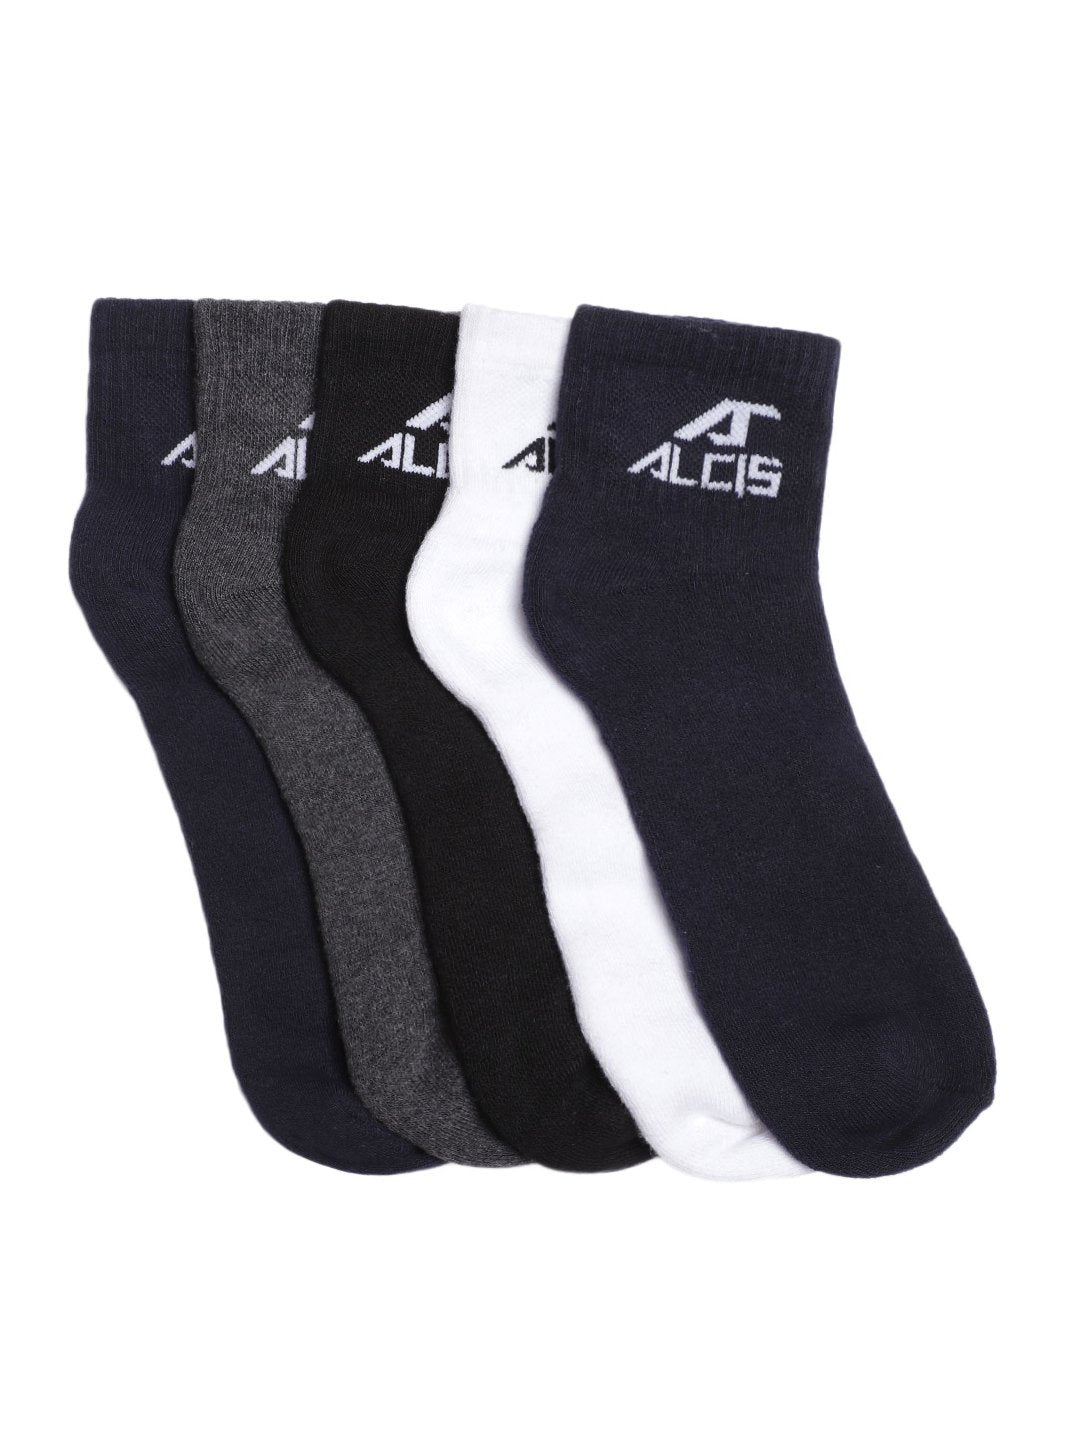 Alcis Socks Pack of 5